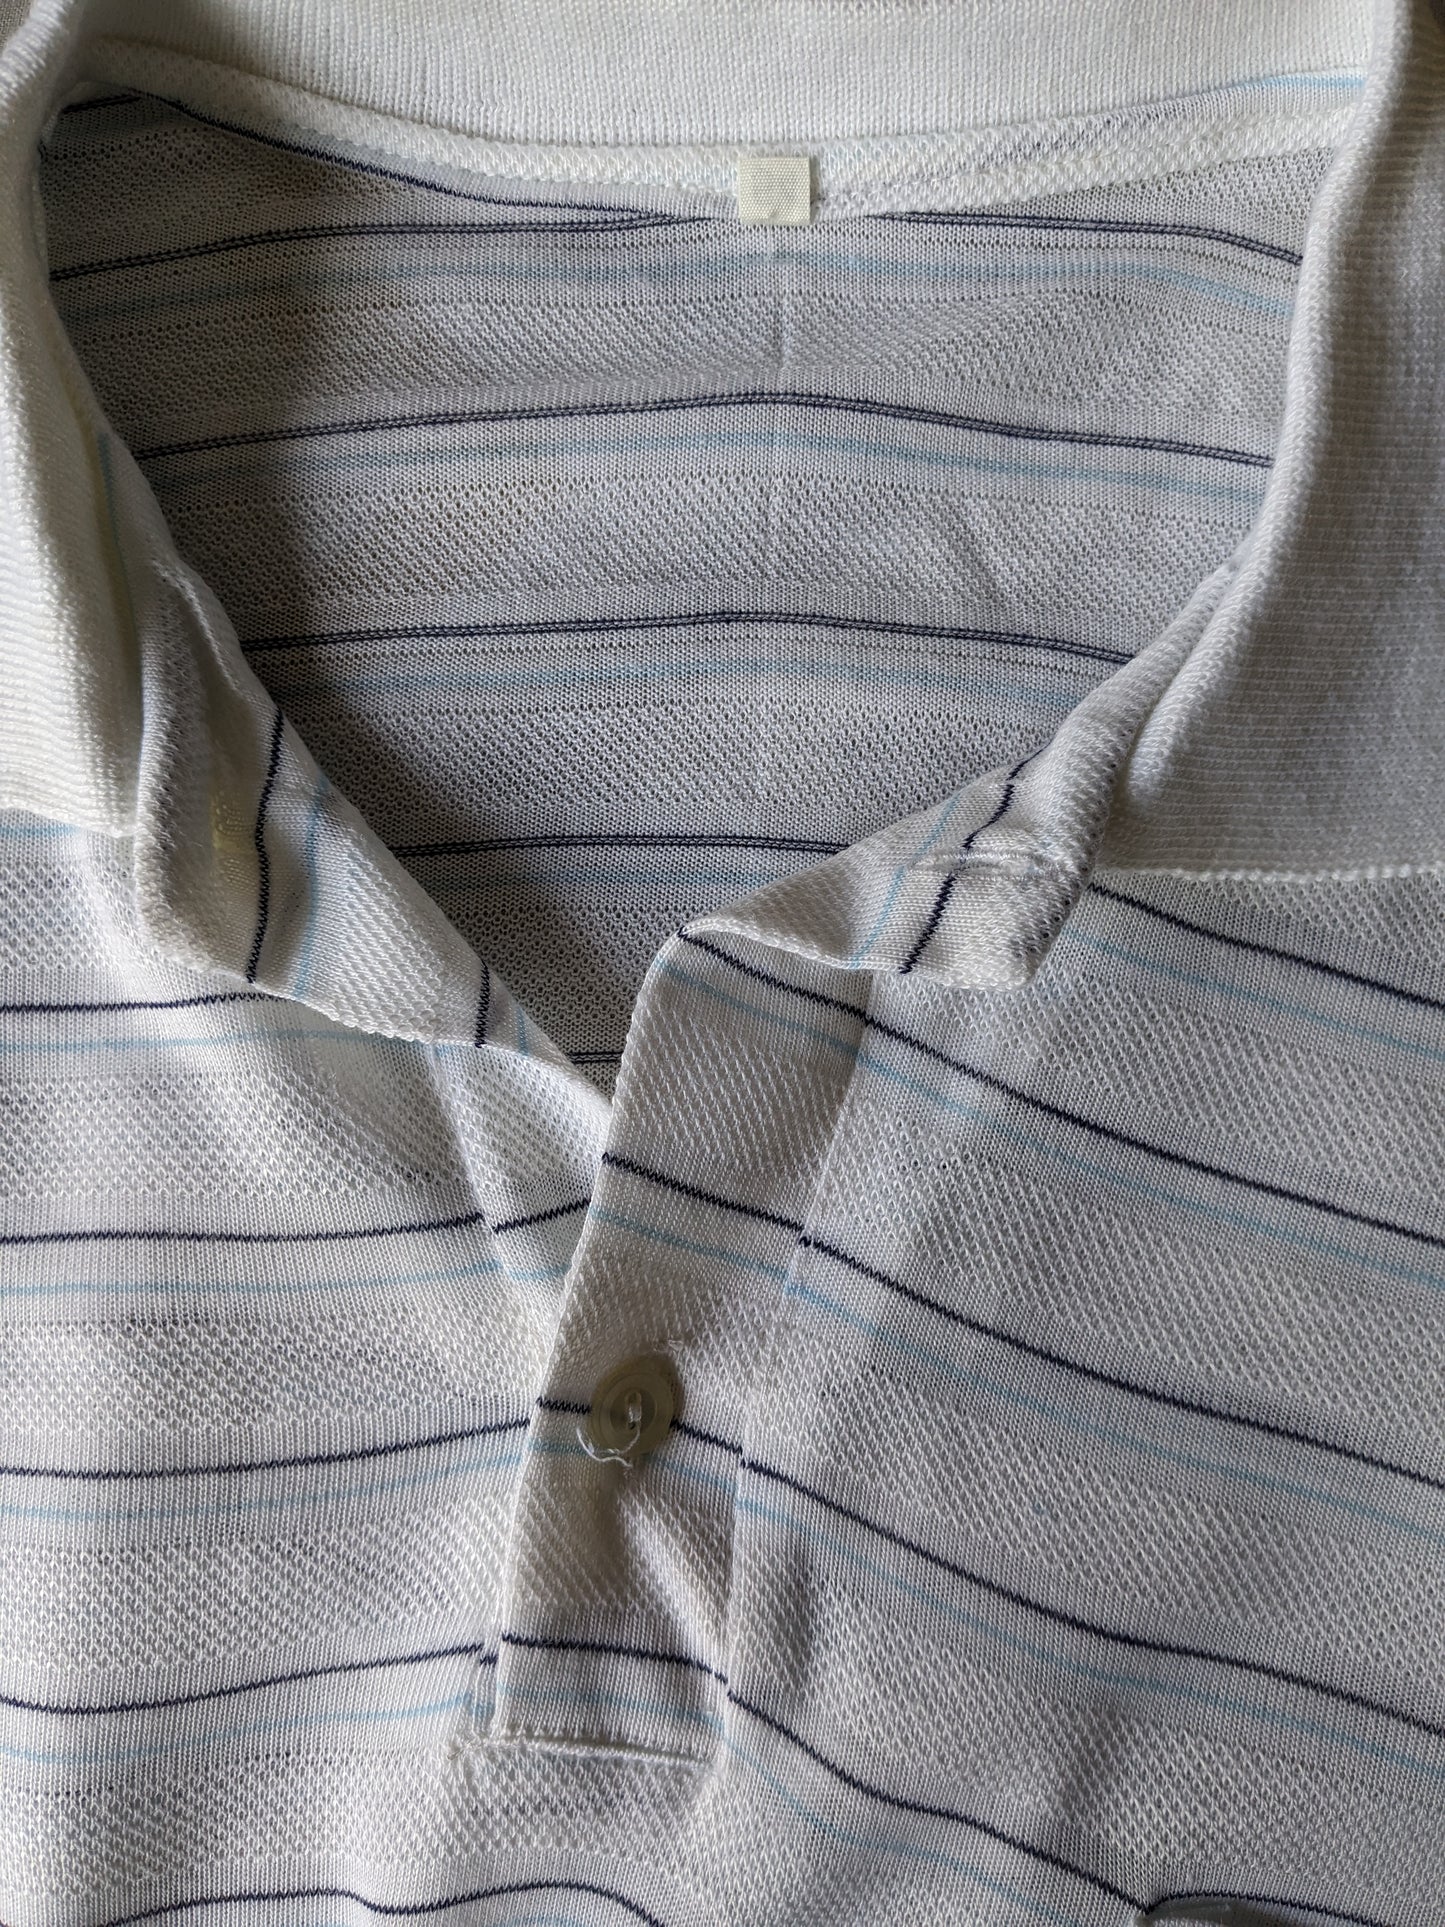 Vintage polo. White blue striped. Size 54 / L.